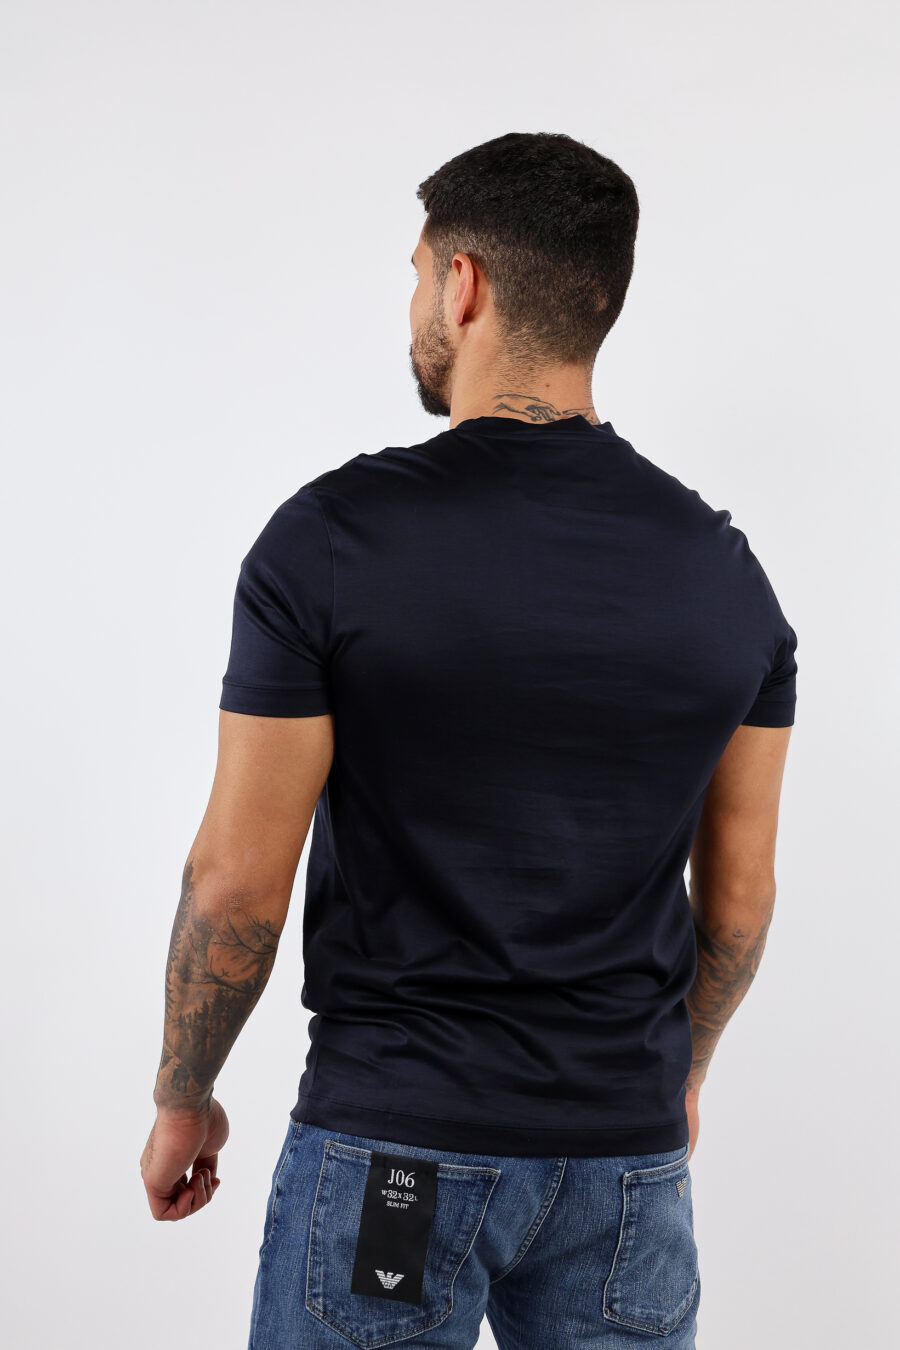 T-shirt azul escura com minilogo "emporio" - BLS Fashion 28